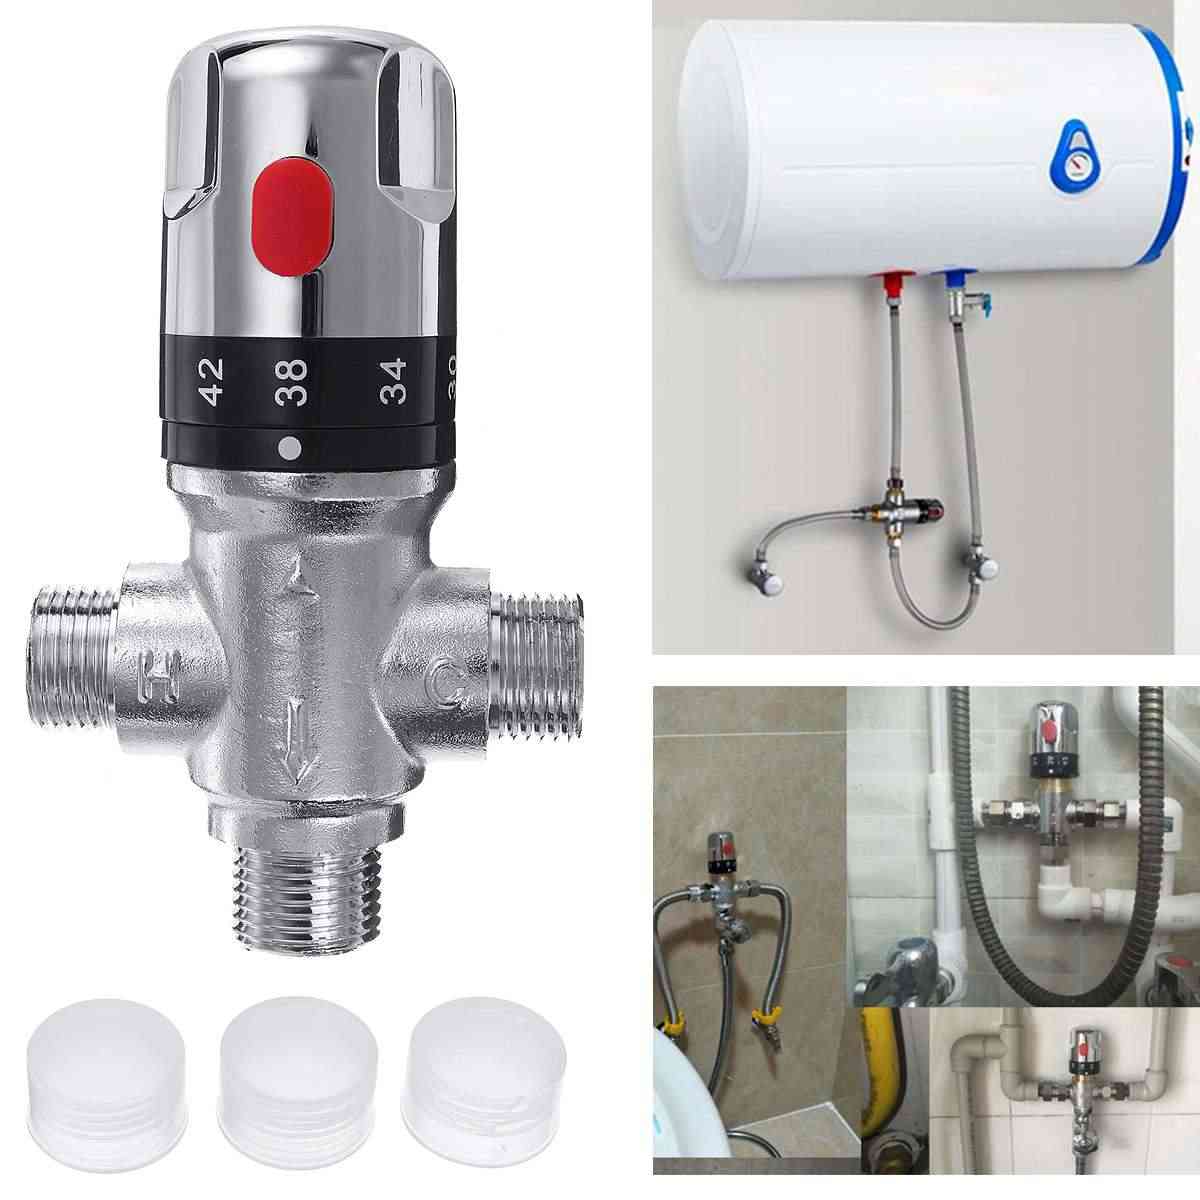 Rubinetto termostato tubo ottone, miscelatore termostatico -controllo temperatura acqua bagno - 4 punti